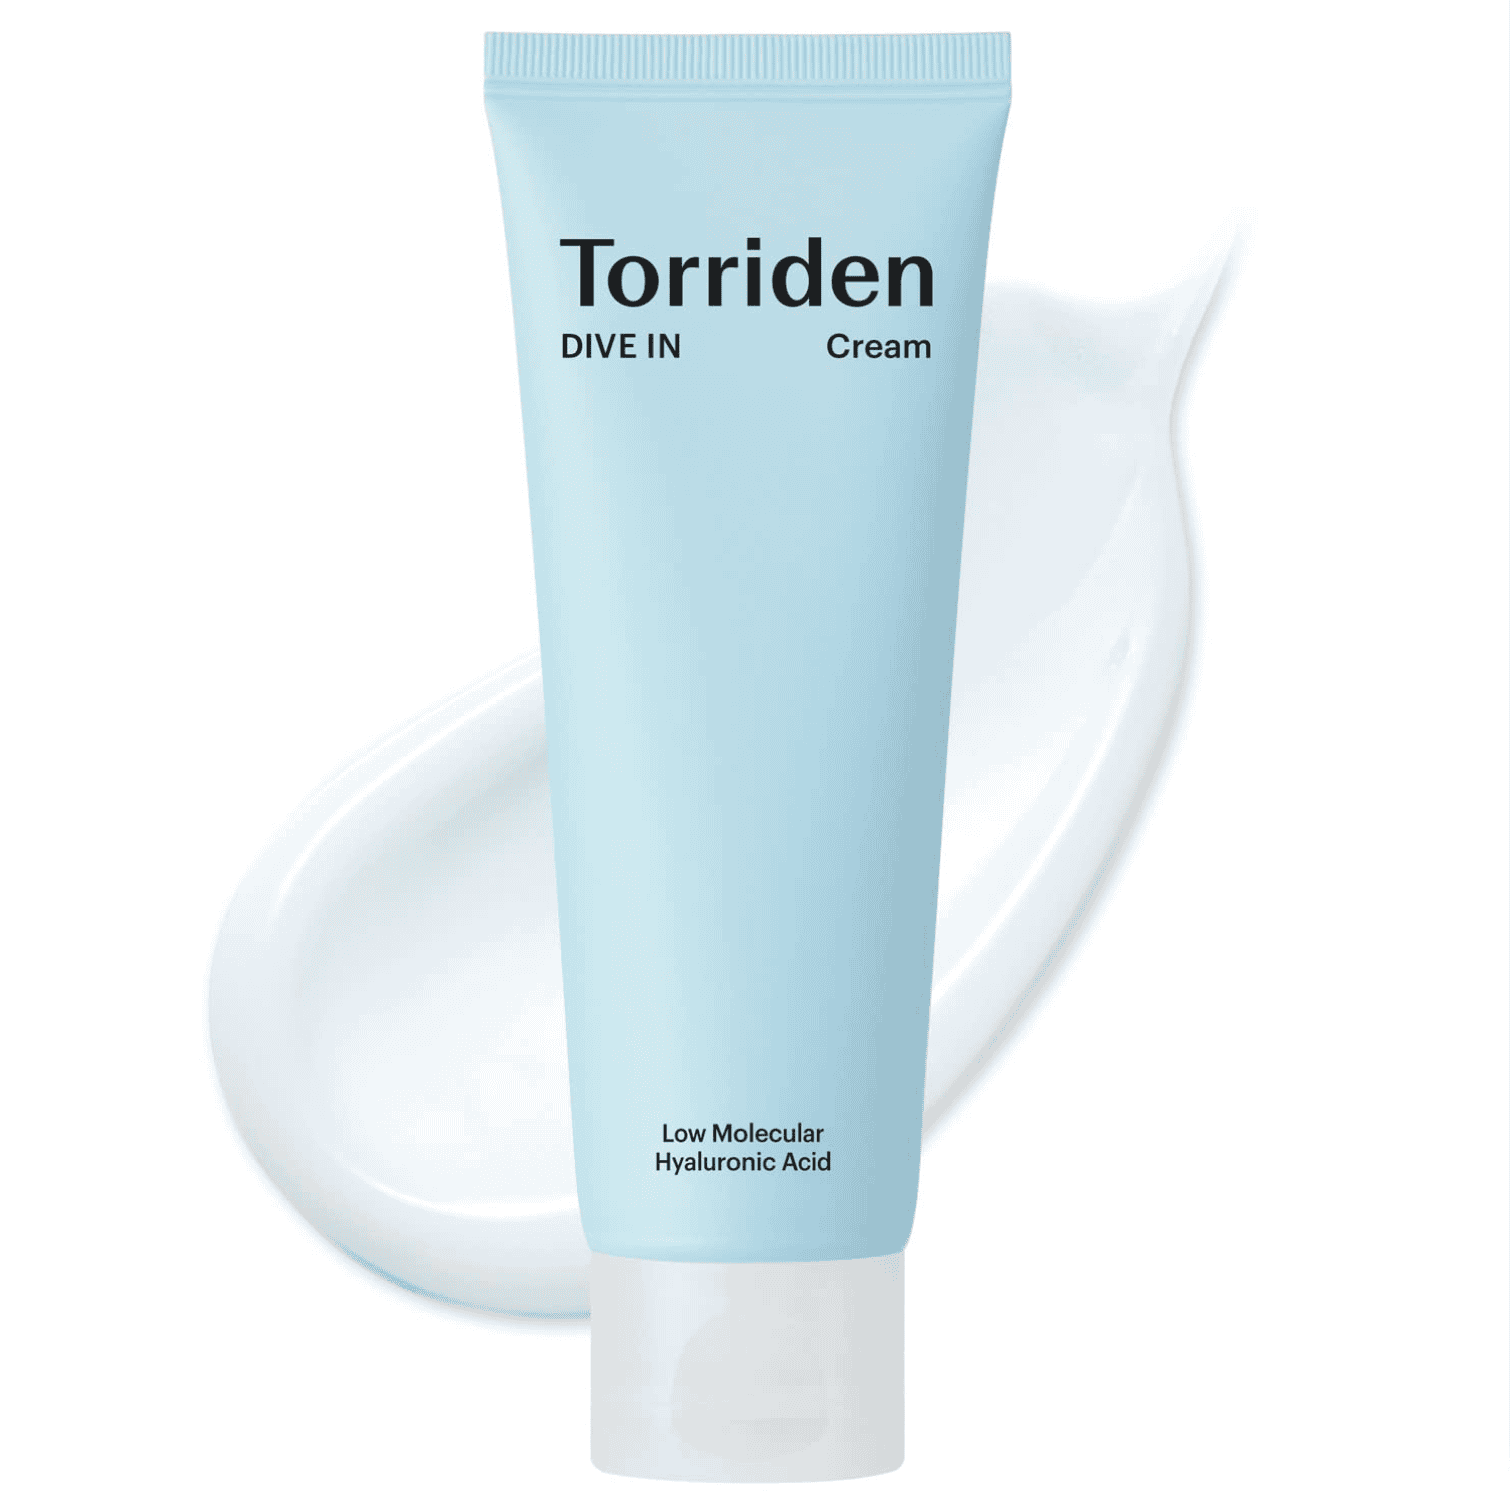 Torriden	DIVE-IN Low Molecular Hyaluronic Acid Cream